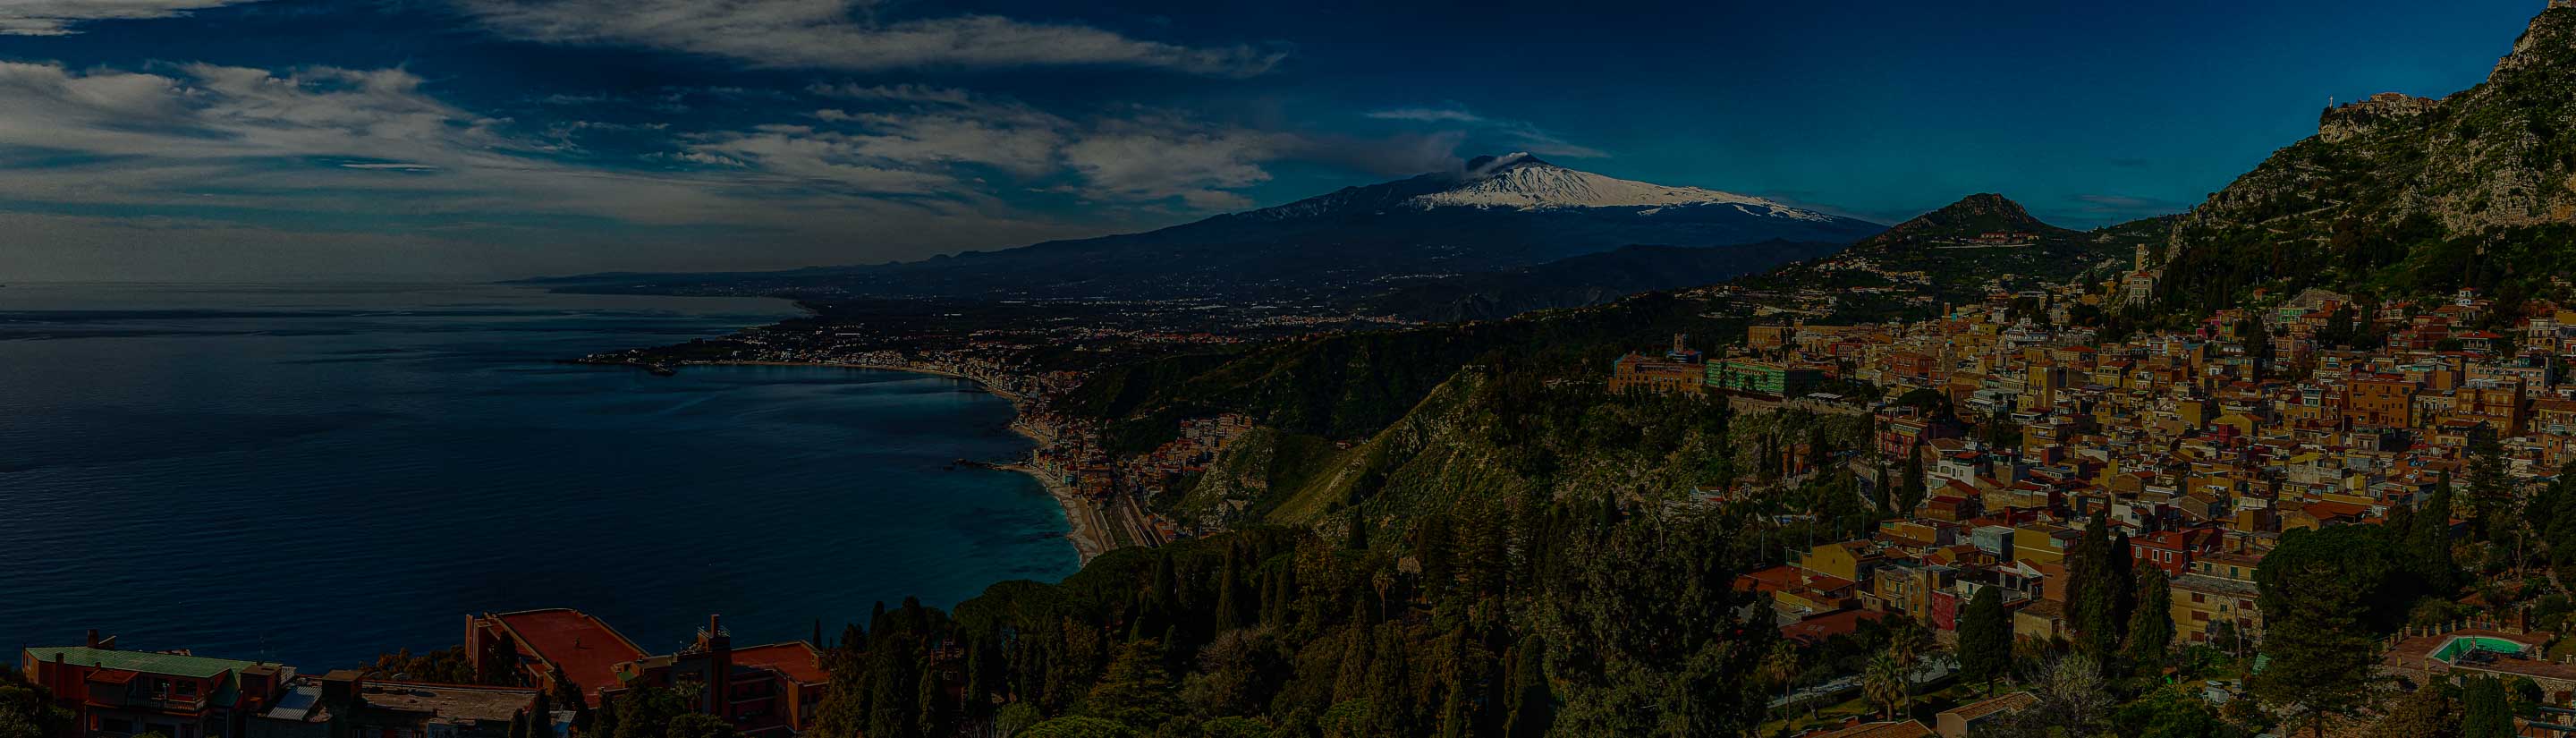 Sizilien Taormina Ätna Vulkan Meer